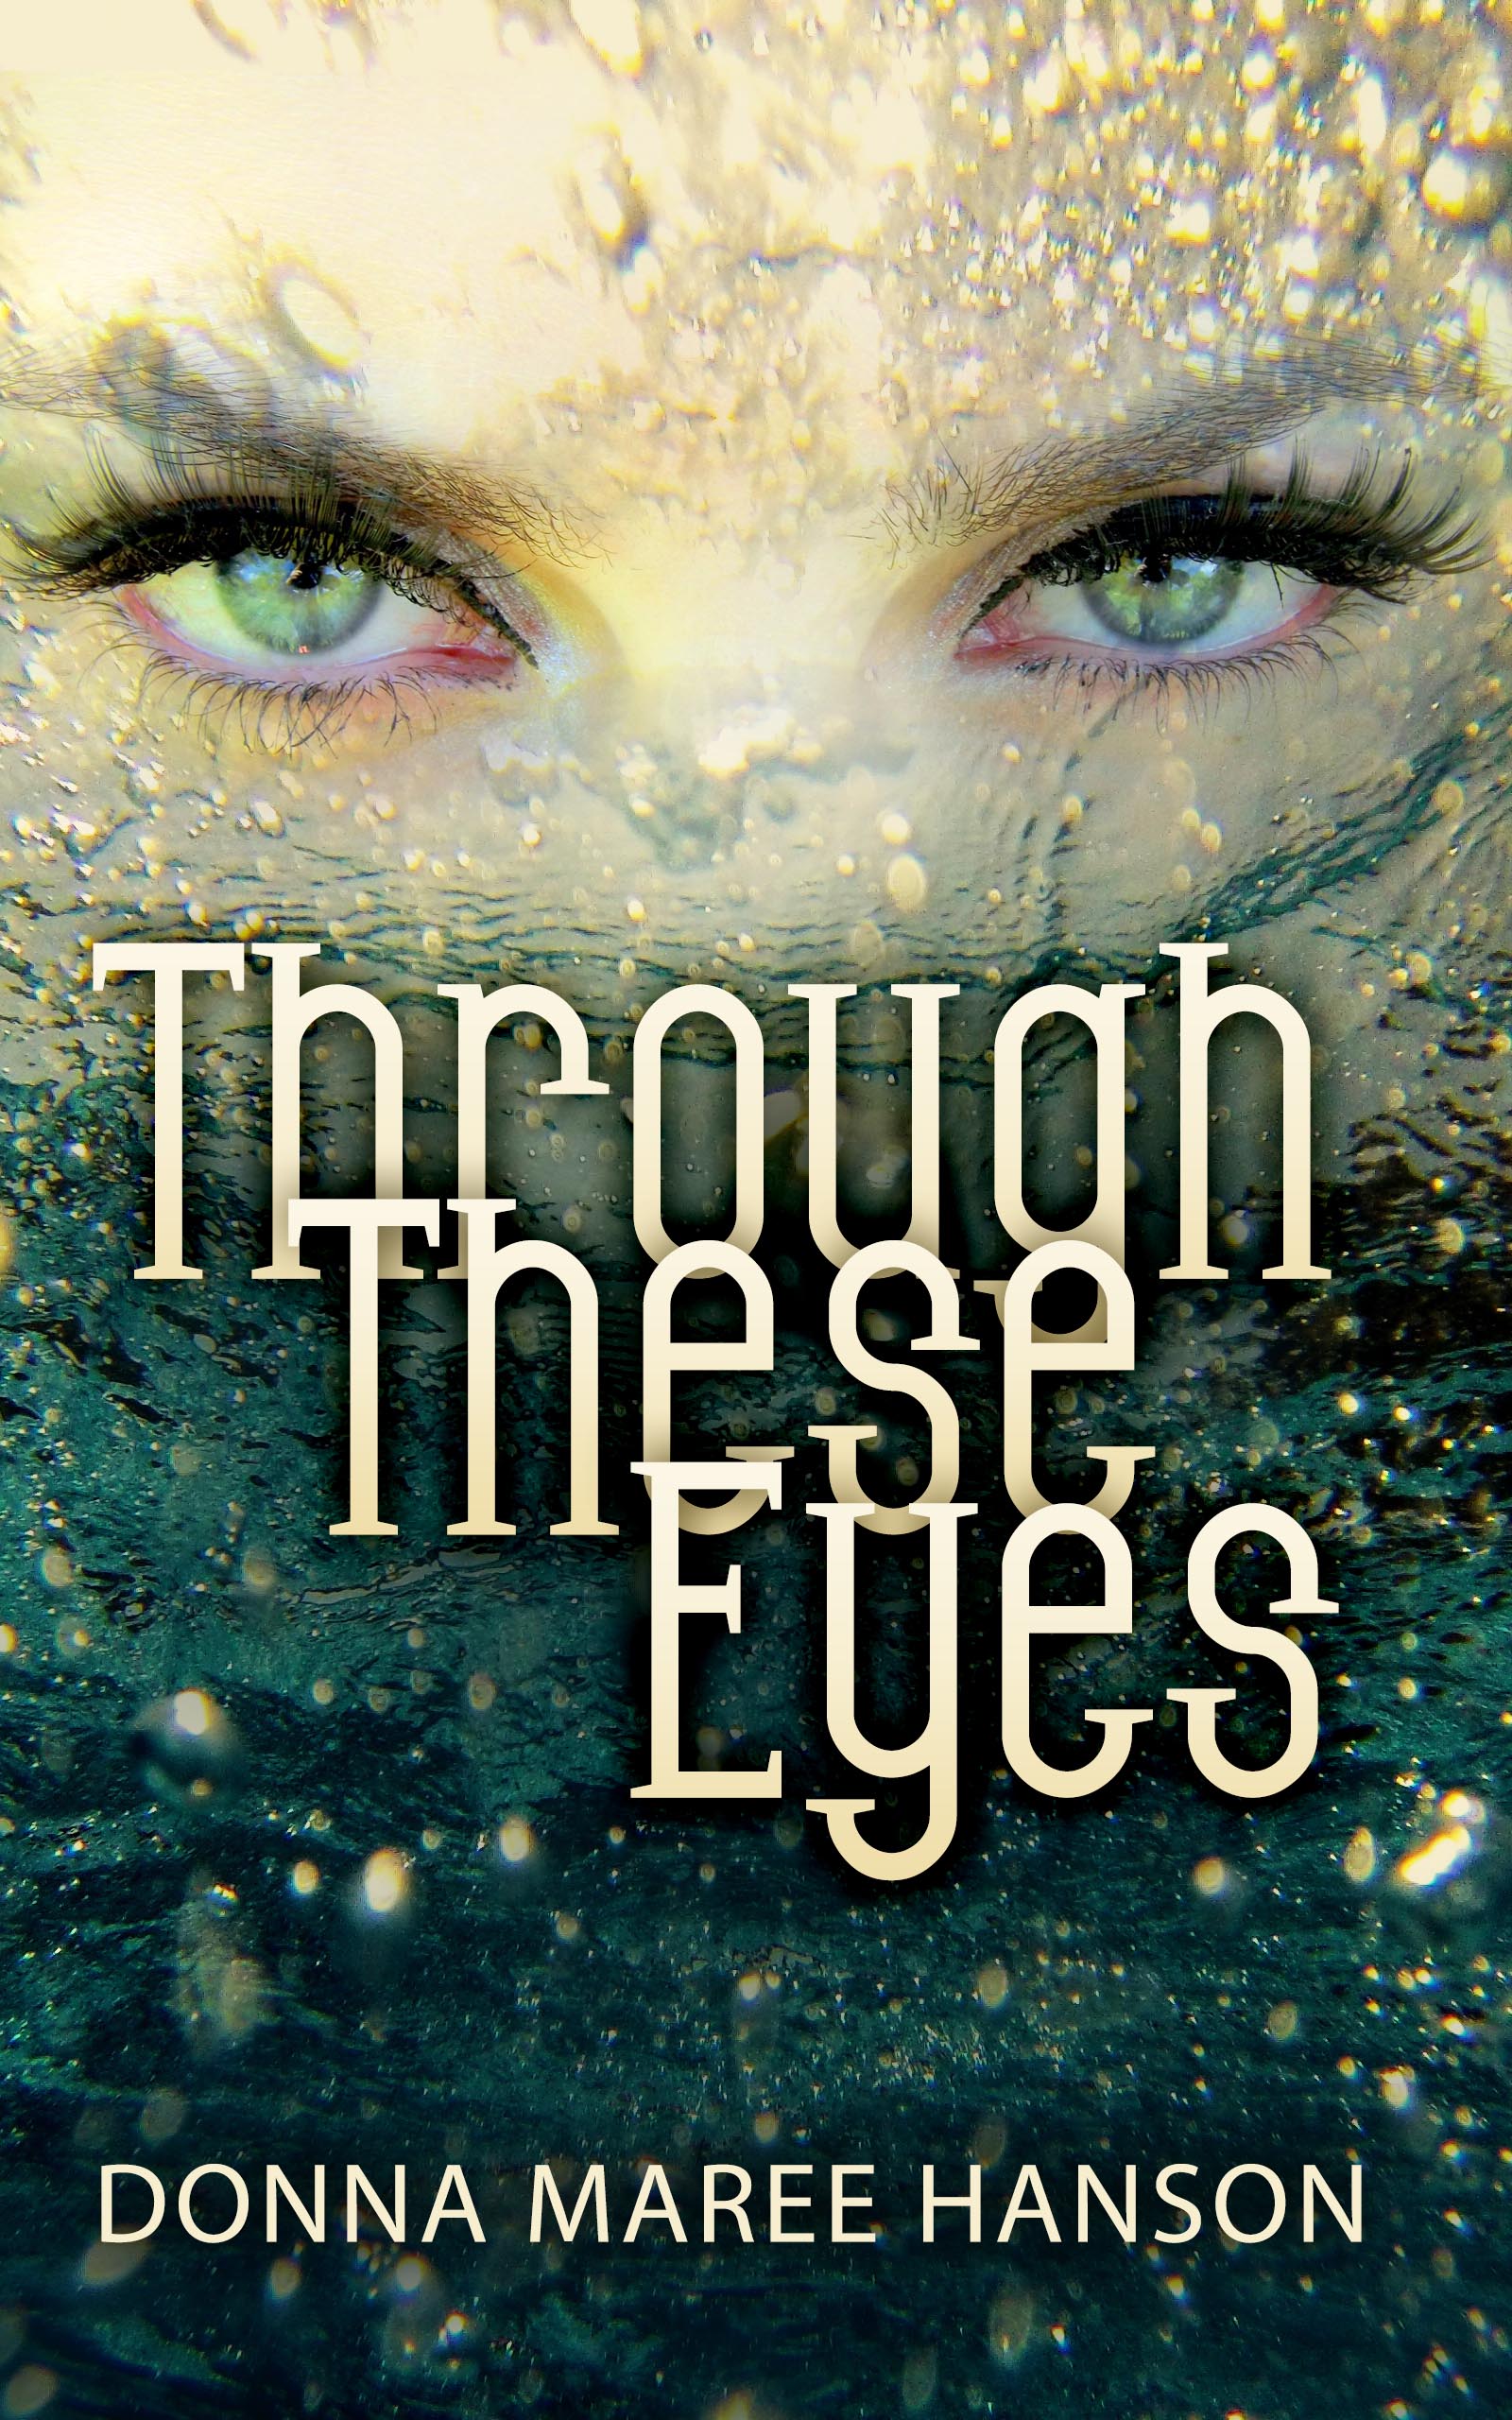 Through These Eyes